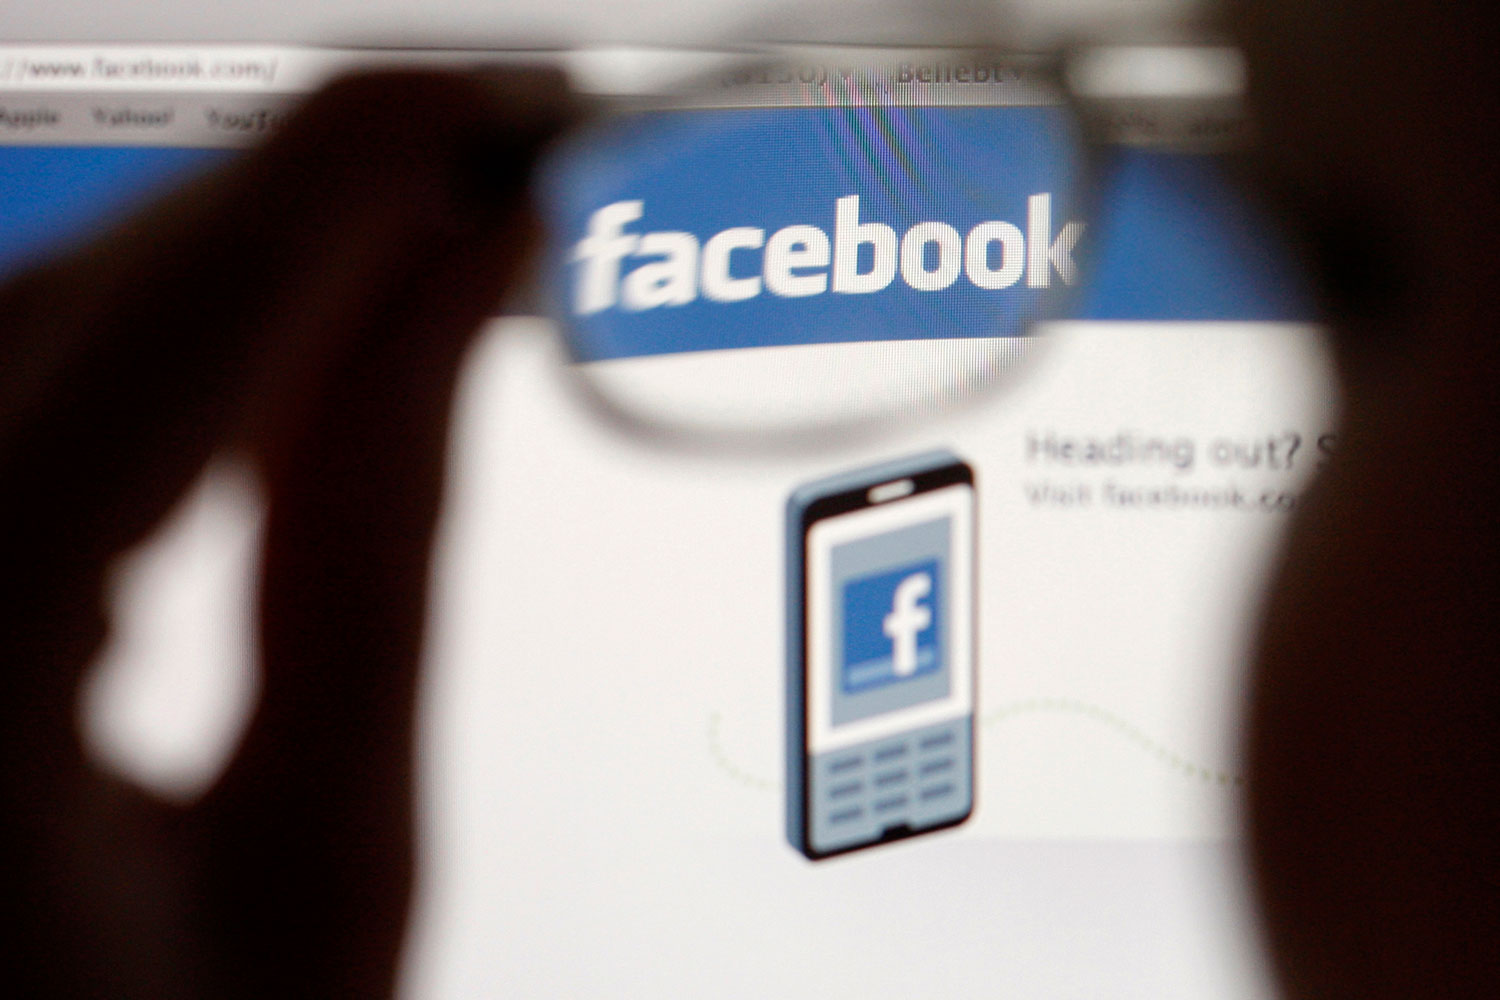 Facebook alteró su algoritmo en 2012 para experimentar con las emociones de los usuarios